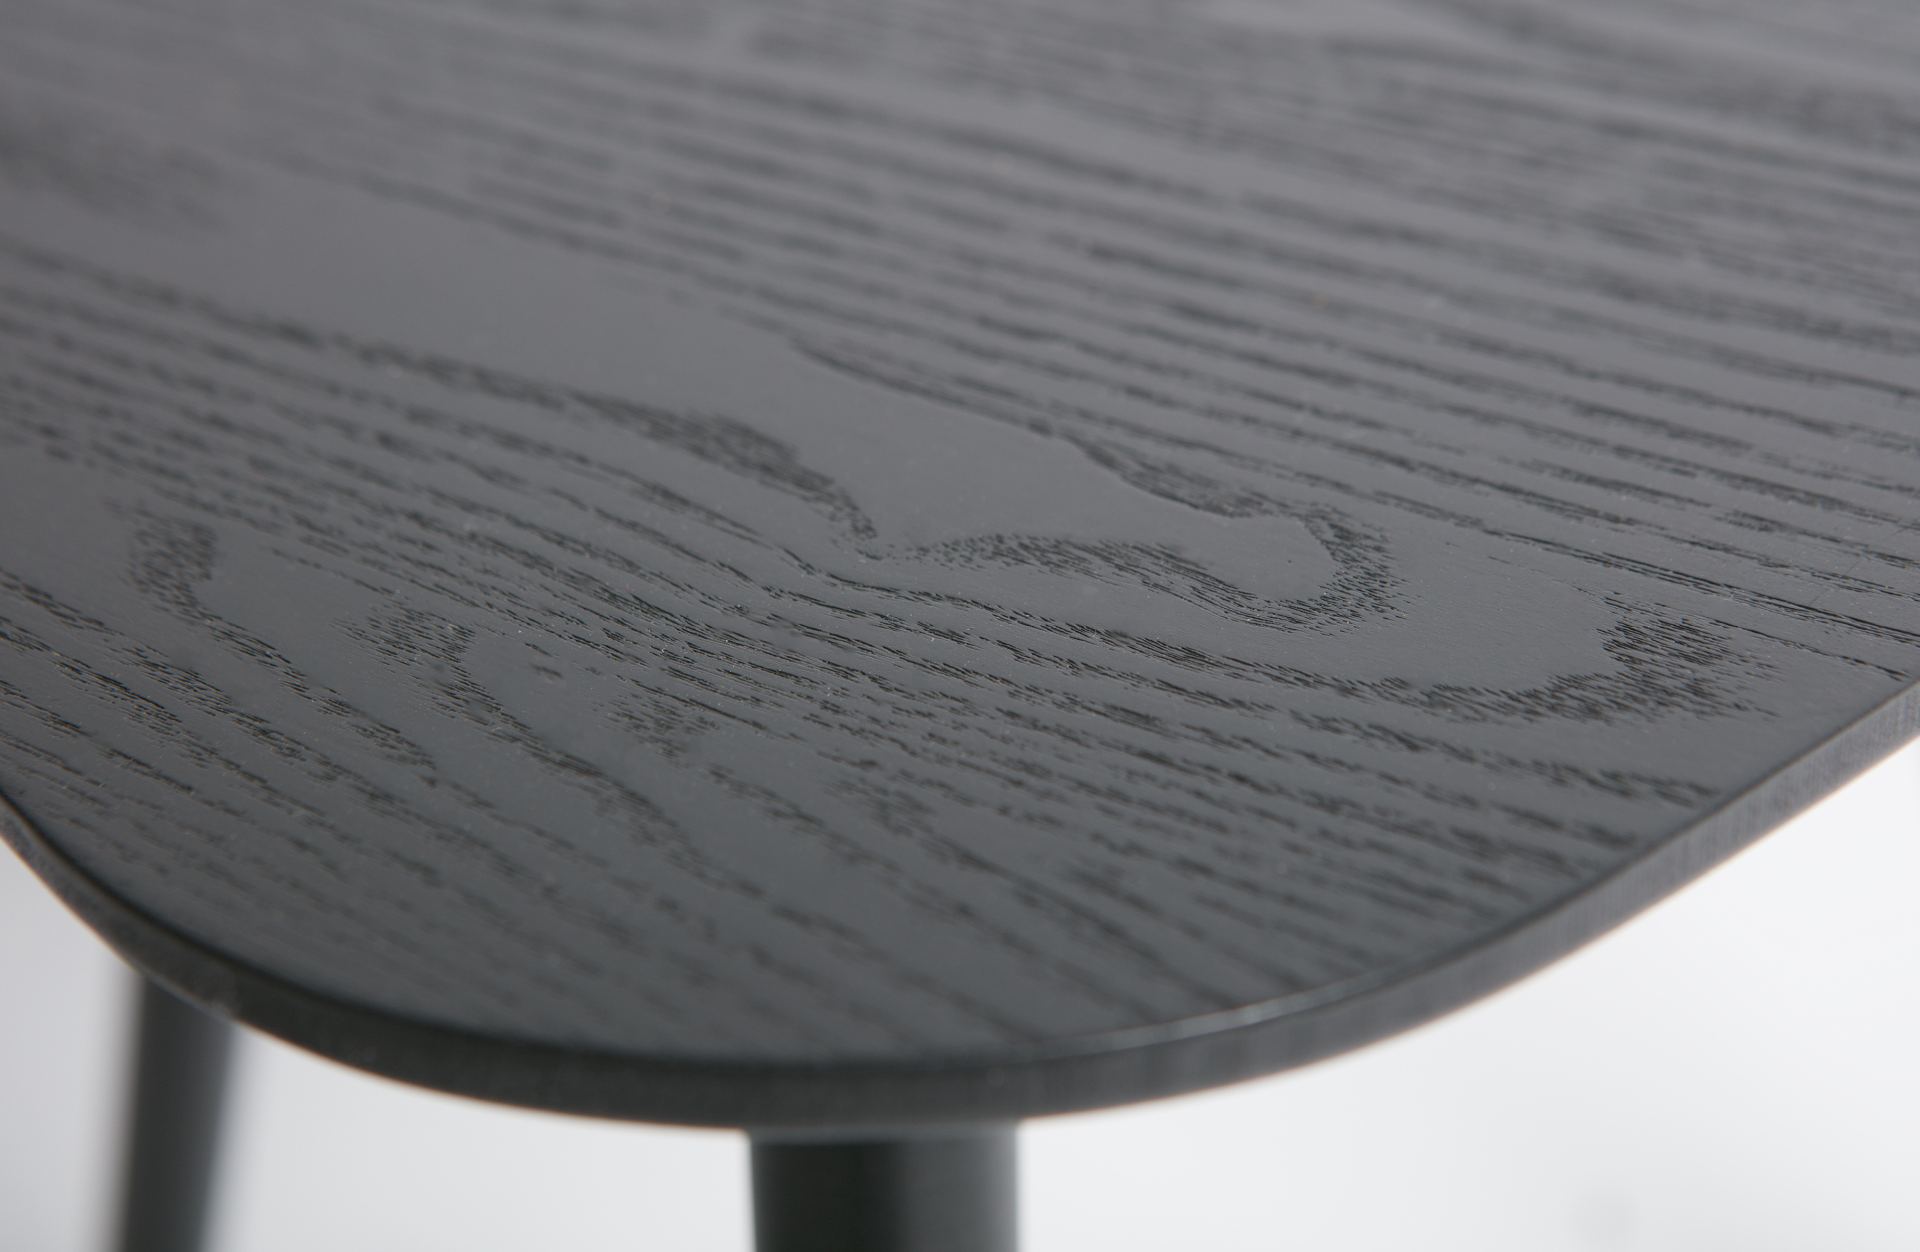 Der Beistelltisch Nila besitzt eine dreieckige Form. Die Tischplatte wurde aus Eschenholz gefertigt und die Beine aus Pinienholz. Der Beistelltisch hat eine Schwarze Farbe.